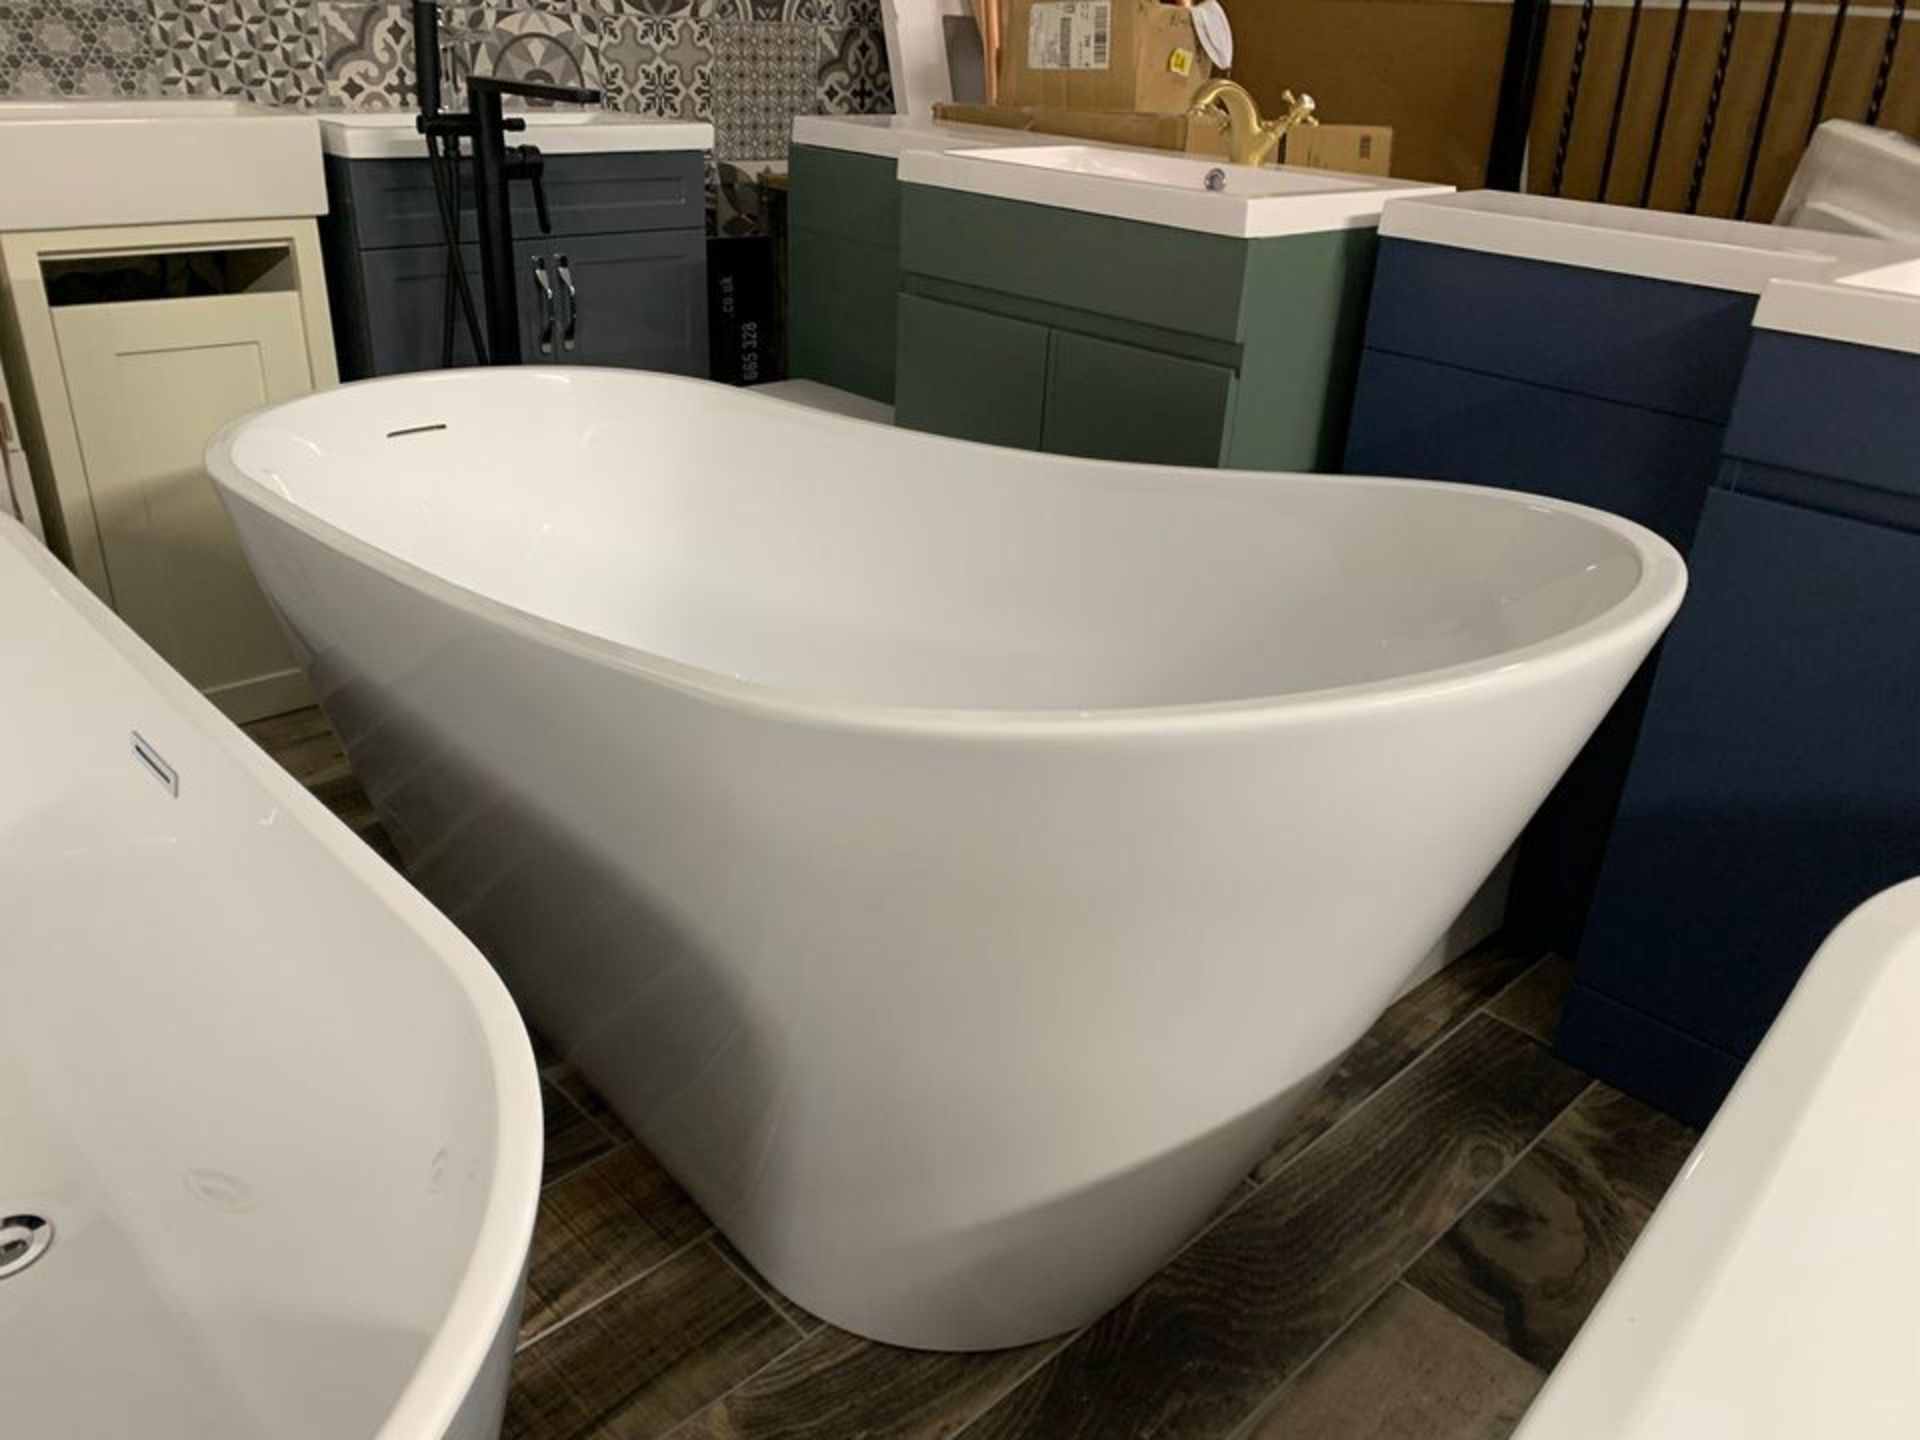 Designer 'CASCADE' White Freestanding Modern Slipper Bath in Arctic White – 1700mm x 740mm - Image 2 of 5